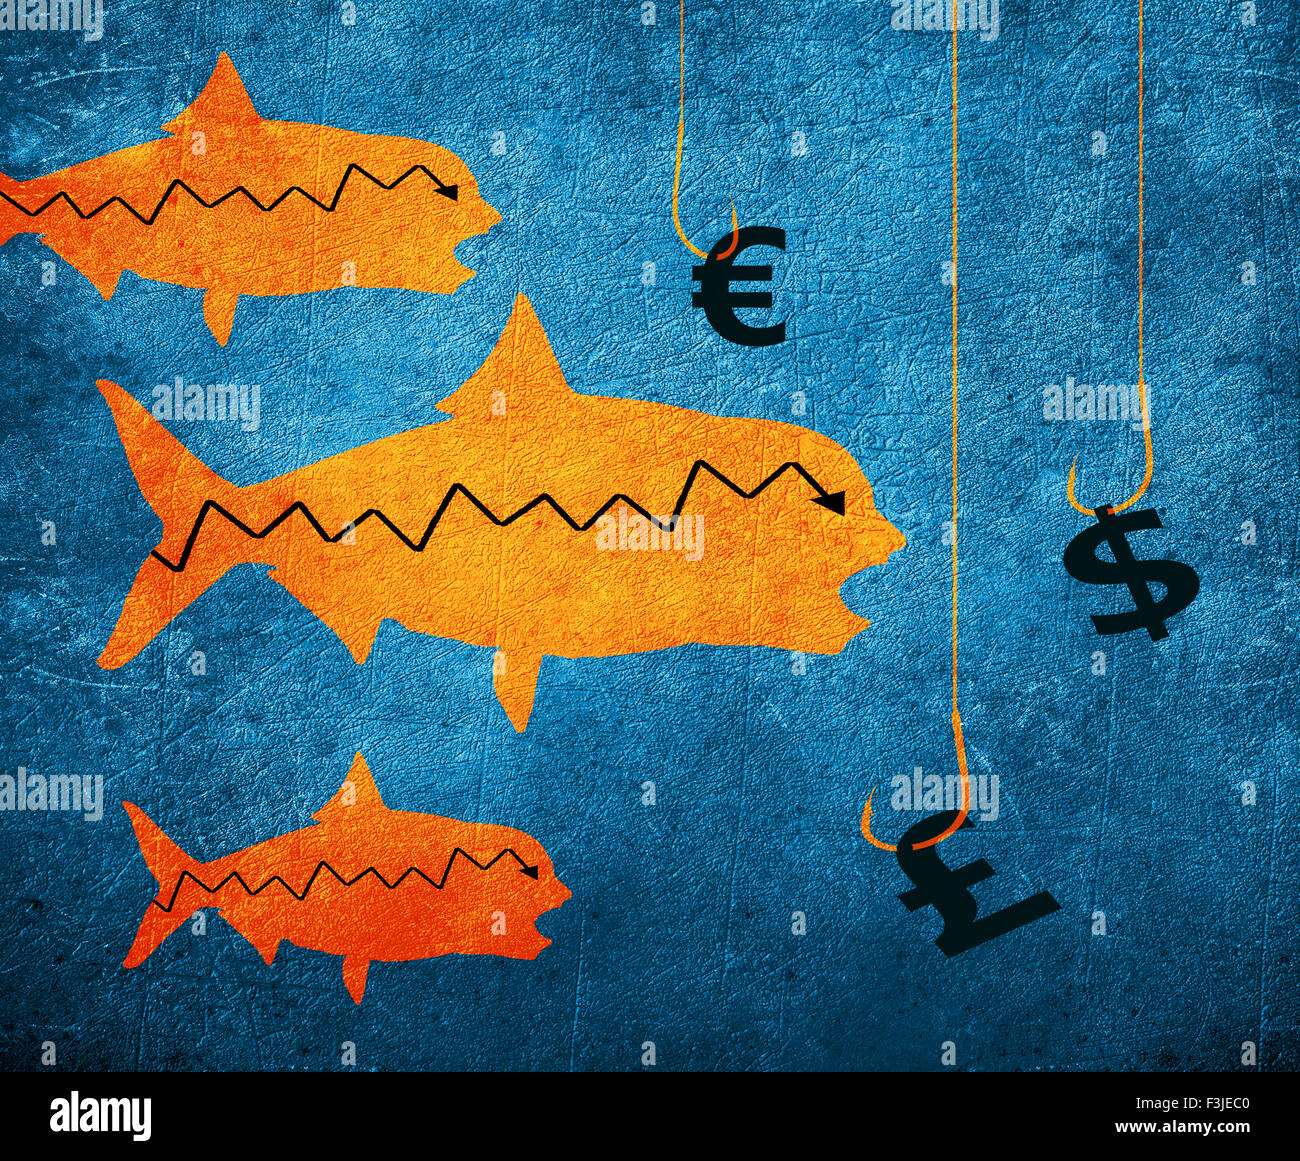 Crochet de pêche de poissons et de l'argent numérique illustration symbole Banque D'Images